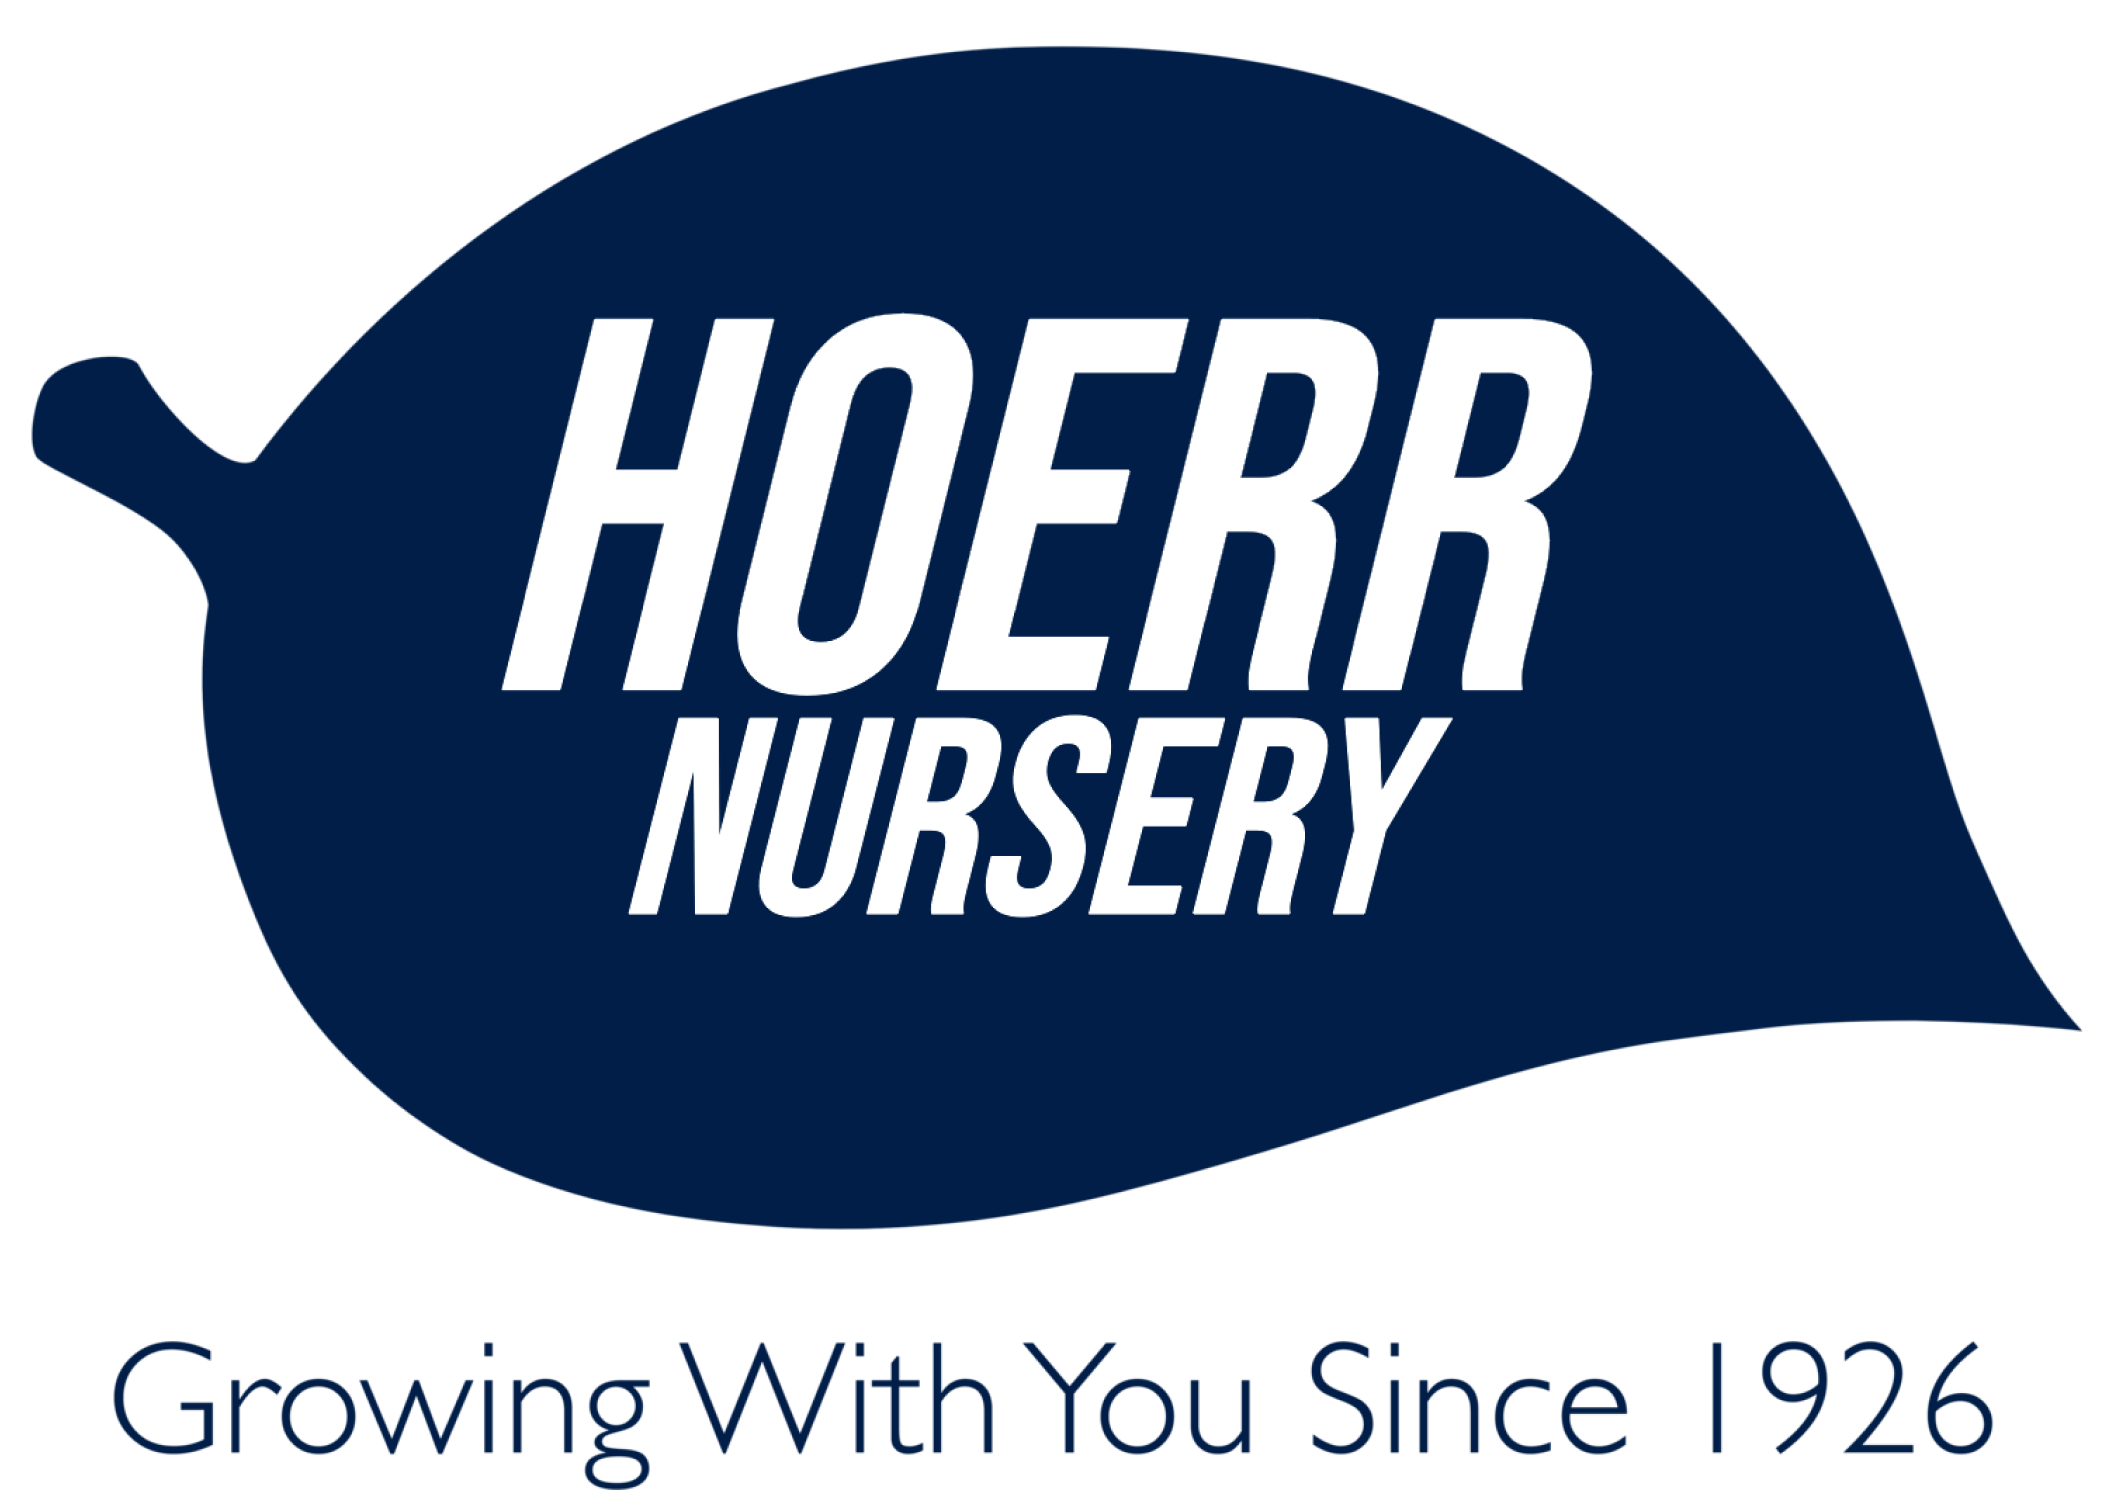 Hoerr Nursery